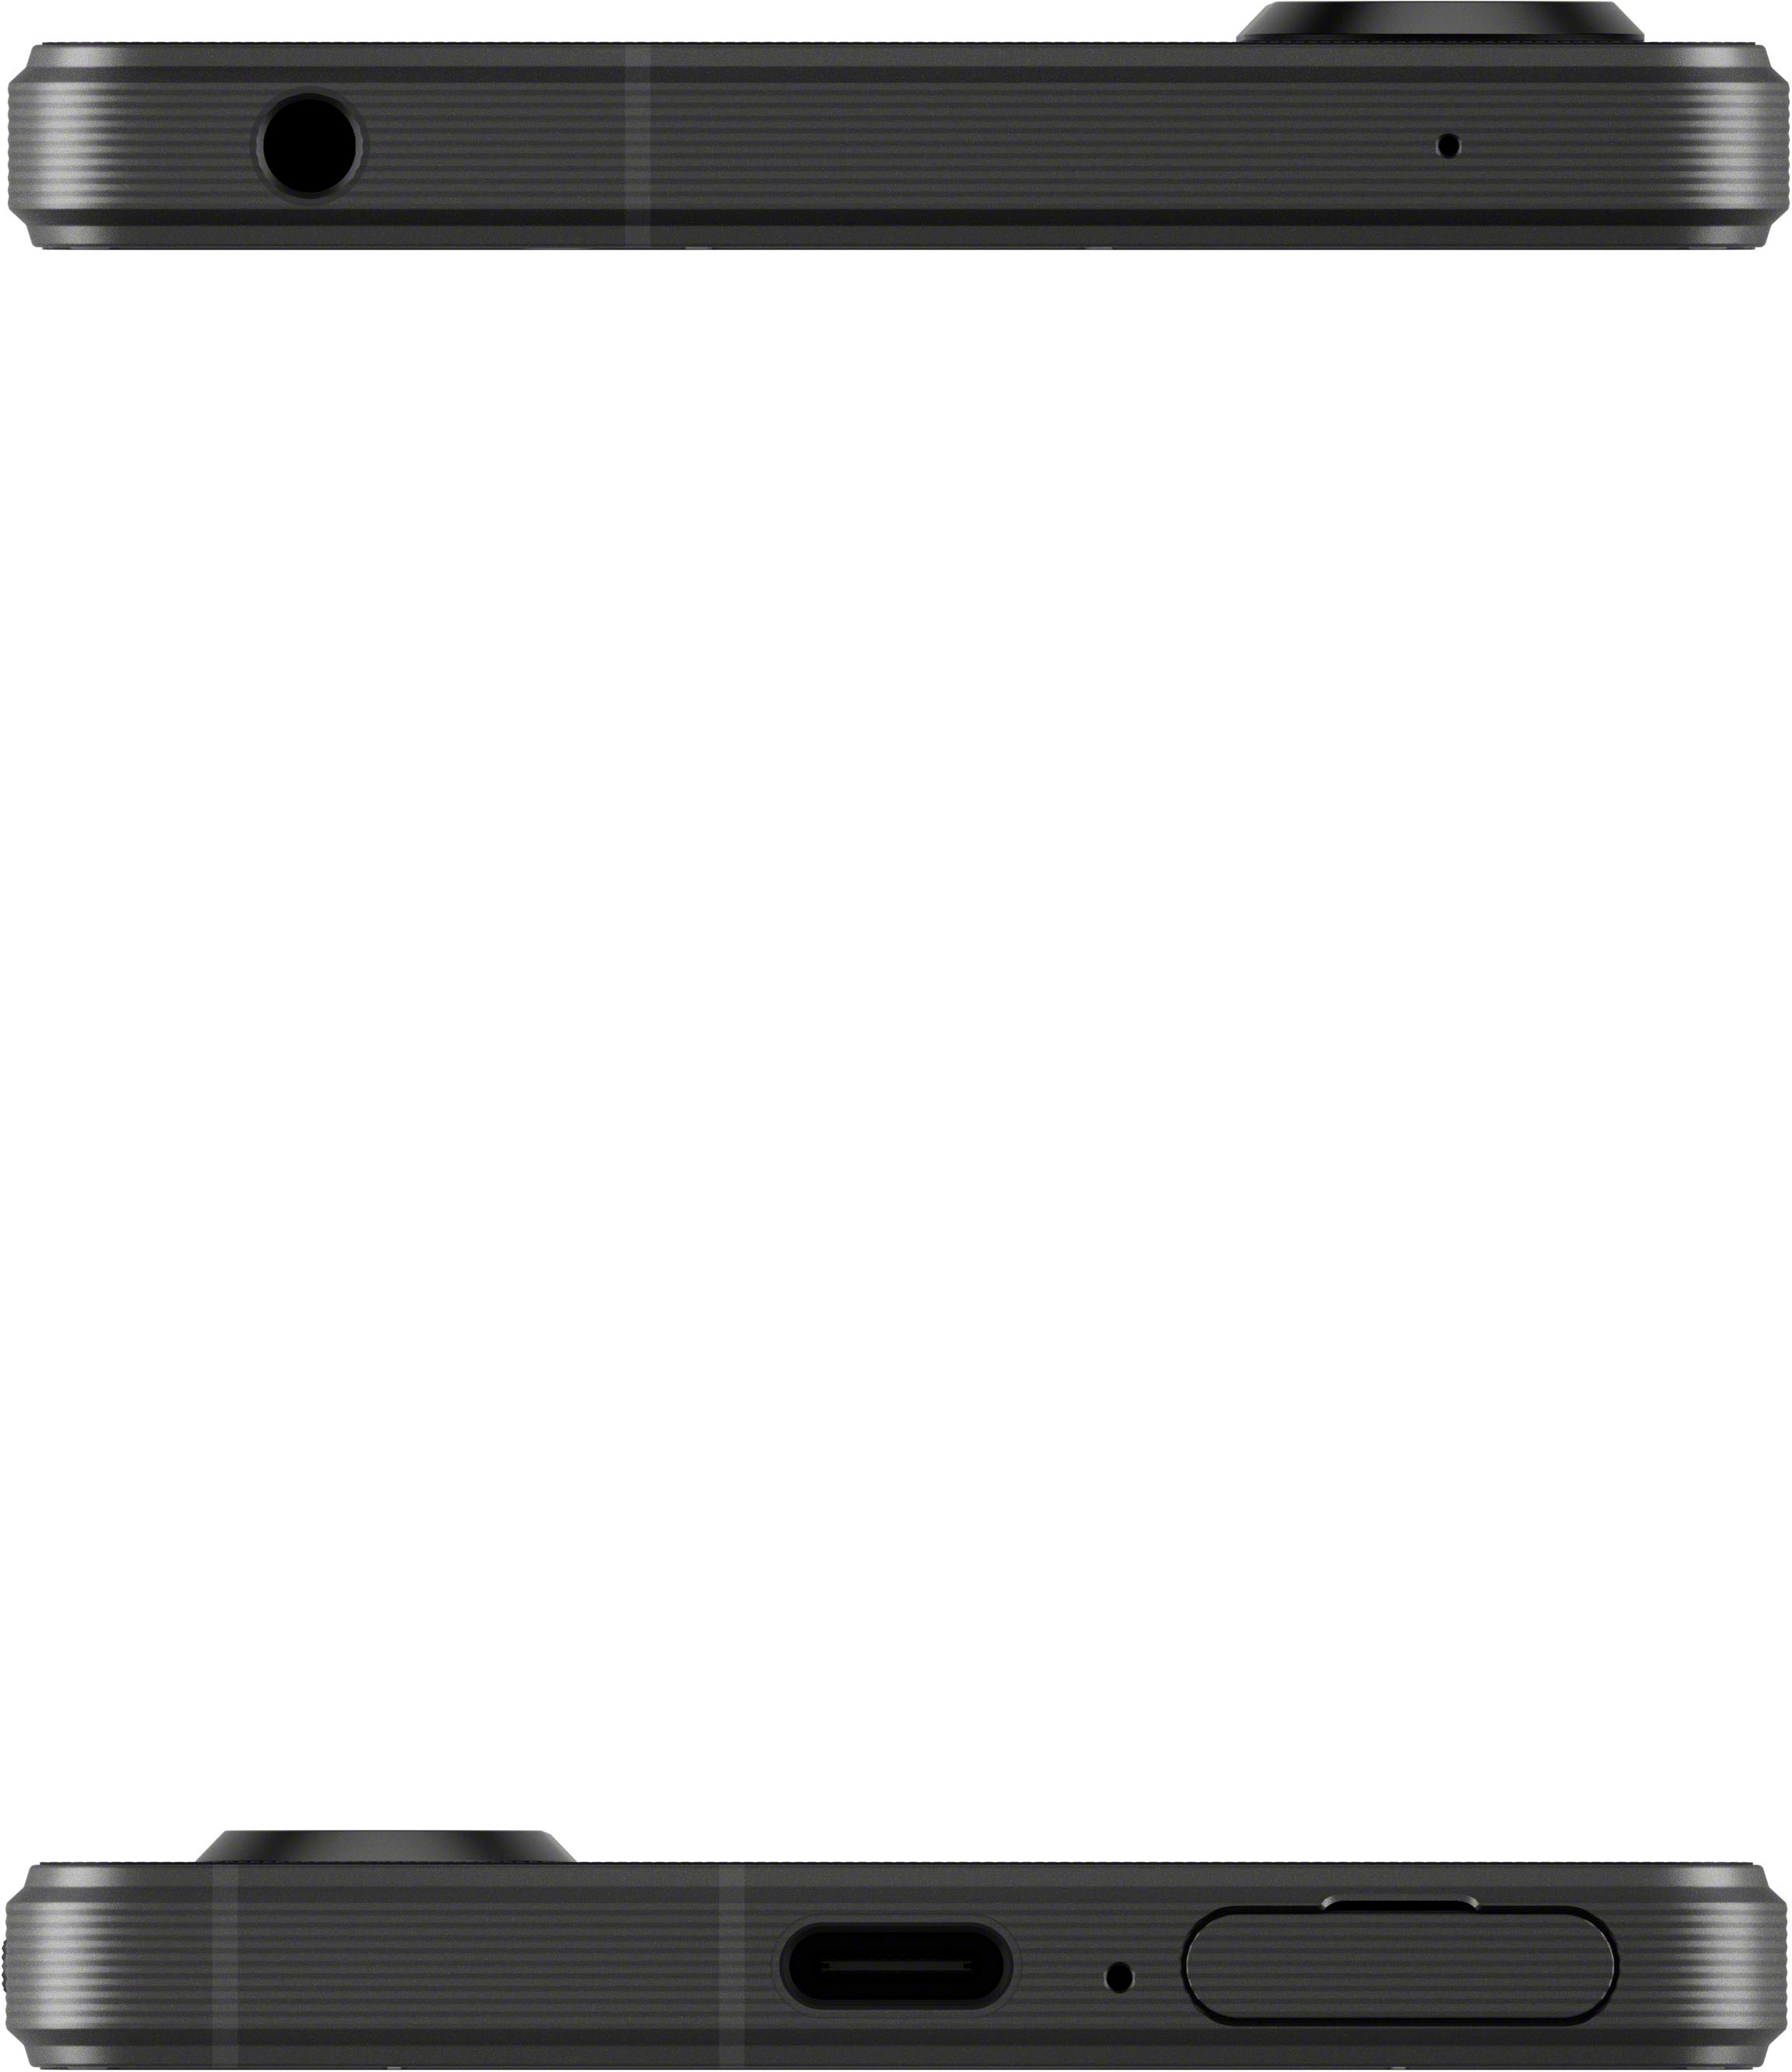 V XQDQ62/B Buy Black 256GB 5G - 1 Xperia Sony (Unlocked) Best